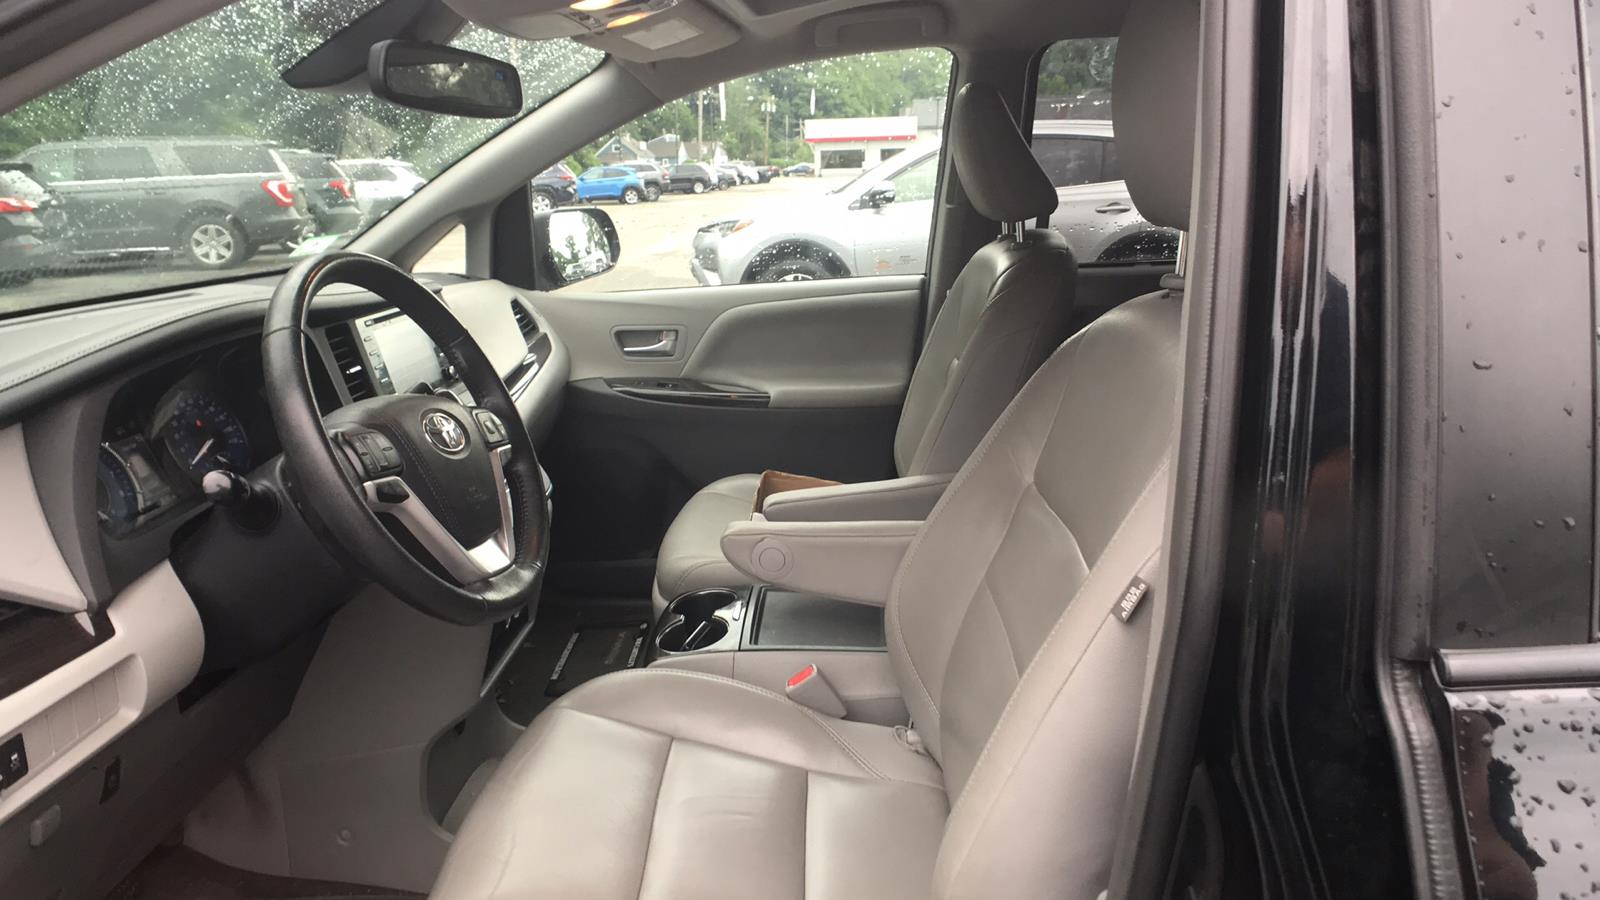 2018 Toyota Sienna Mini-van, Passenger